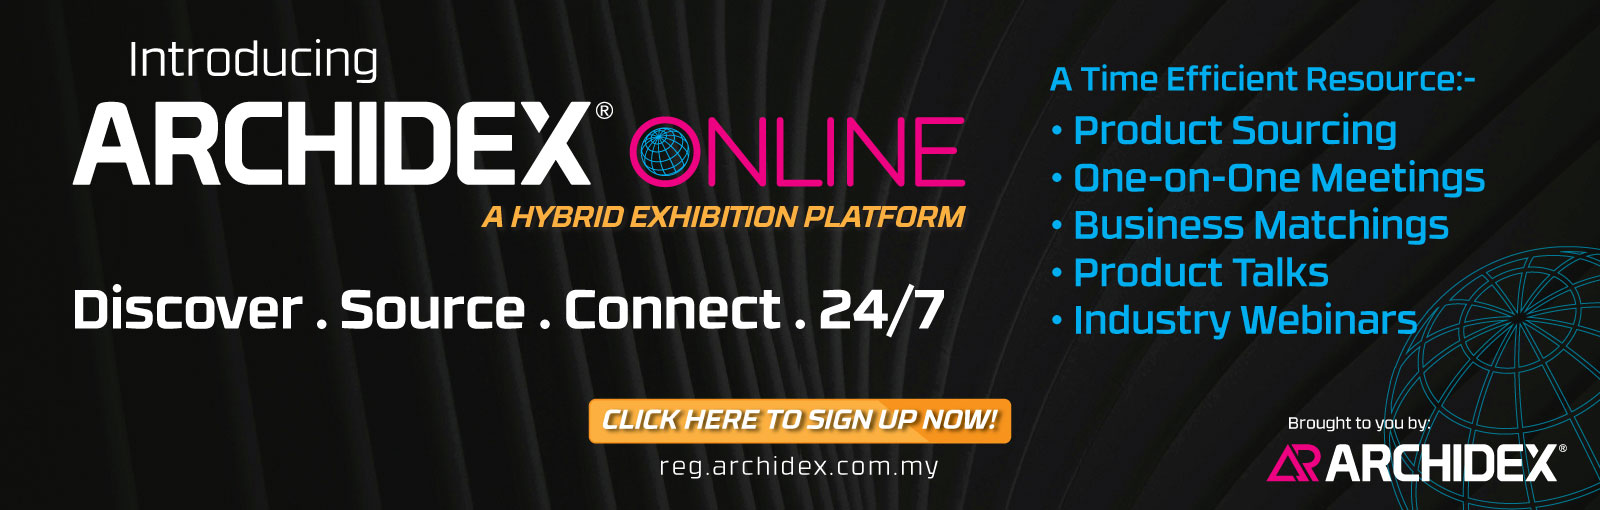 Archidex Online